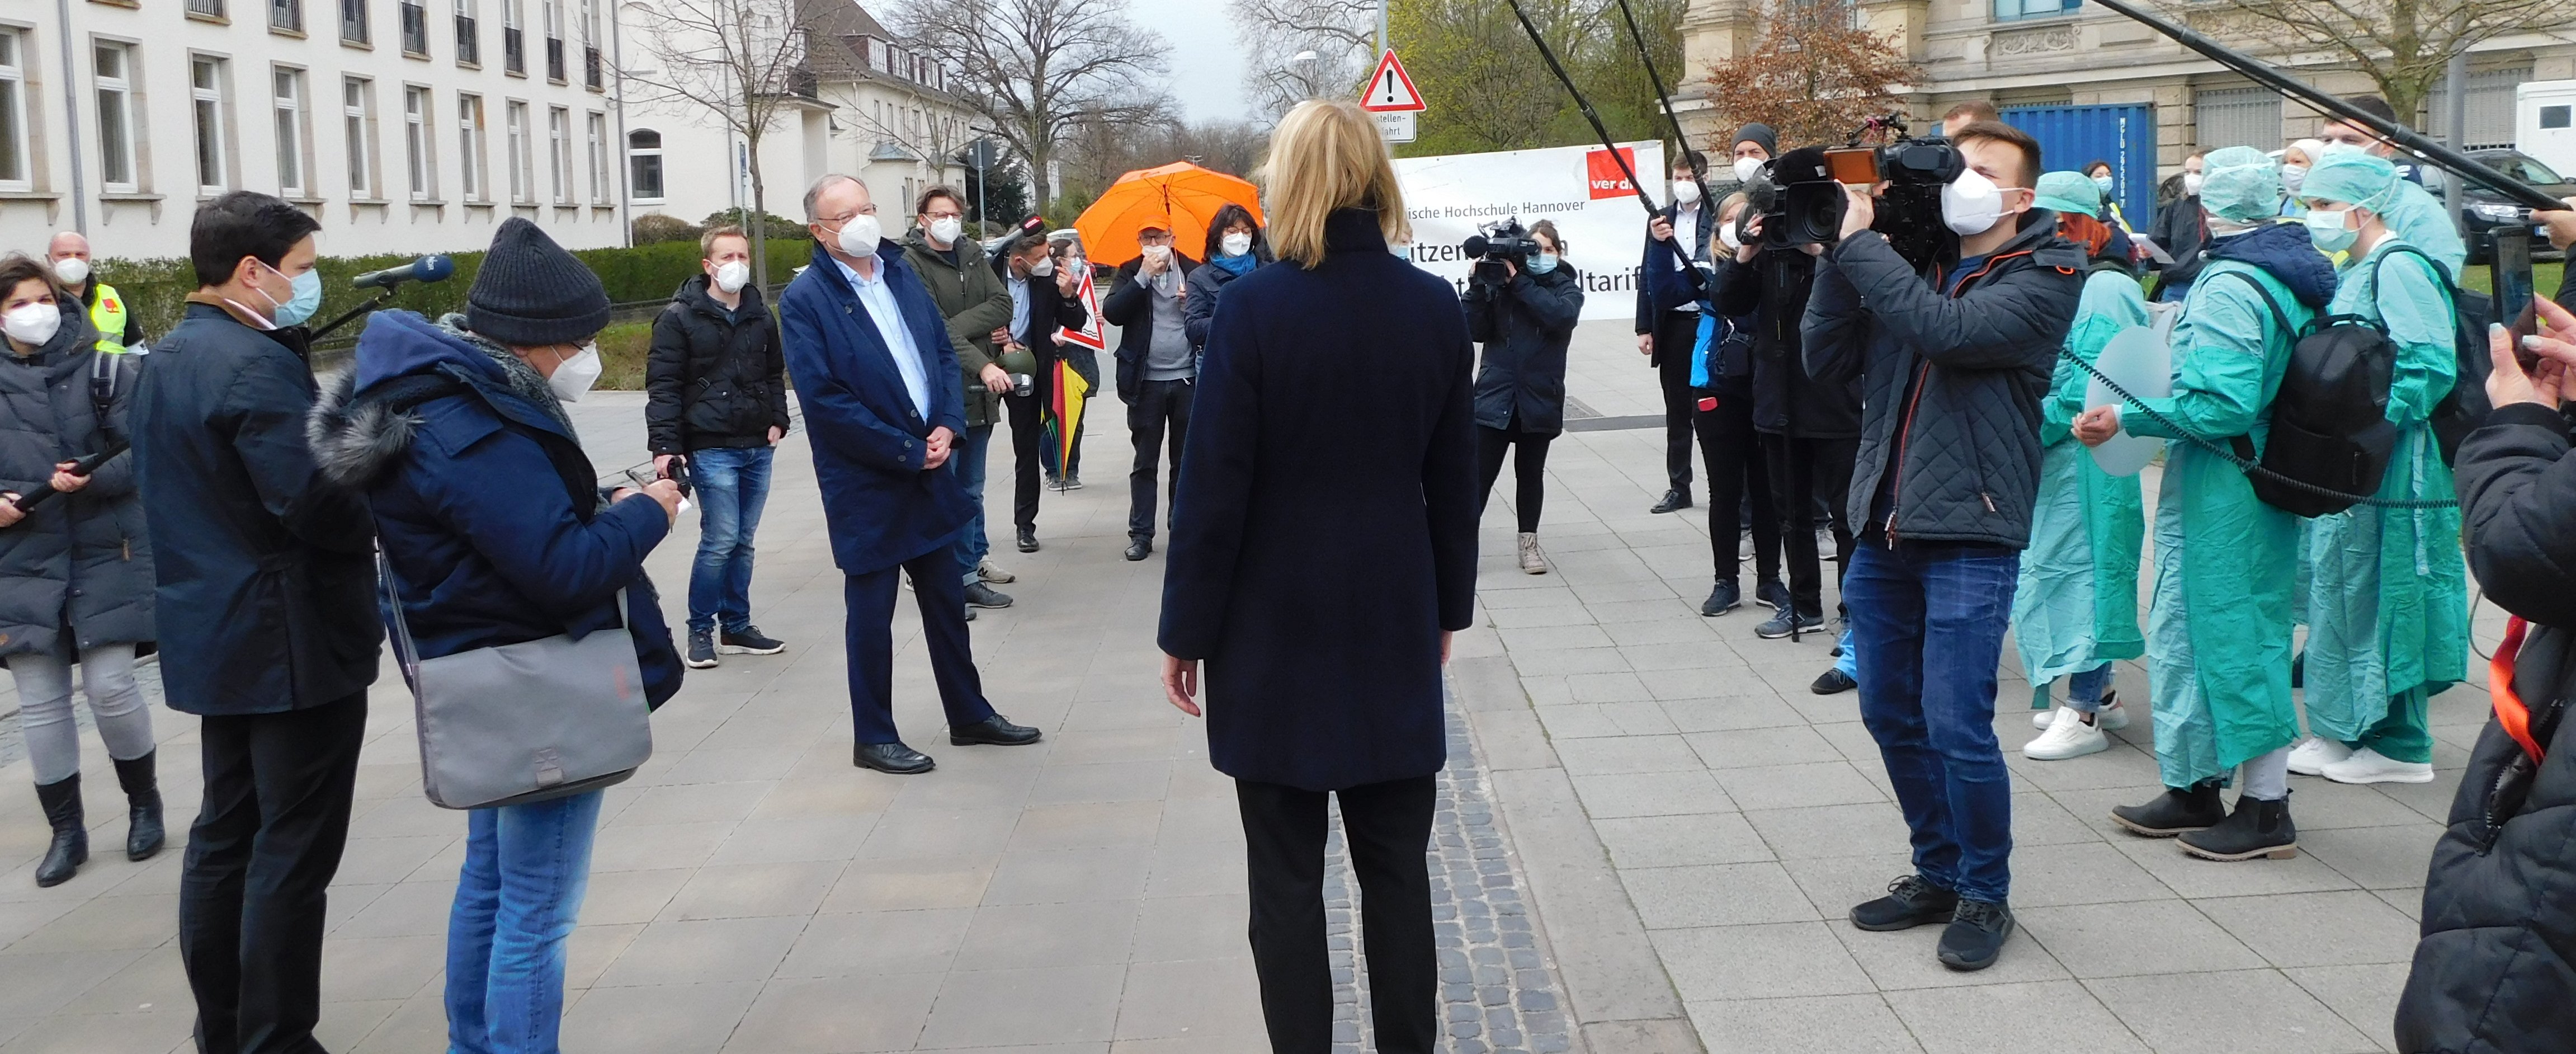 Die Personalratsvorsitzende Jutta Ulrich wird von der Presse vor der Staatskanzlei in Hannover interviewt